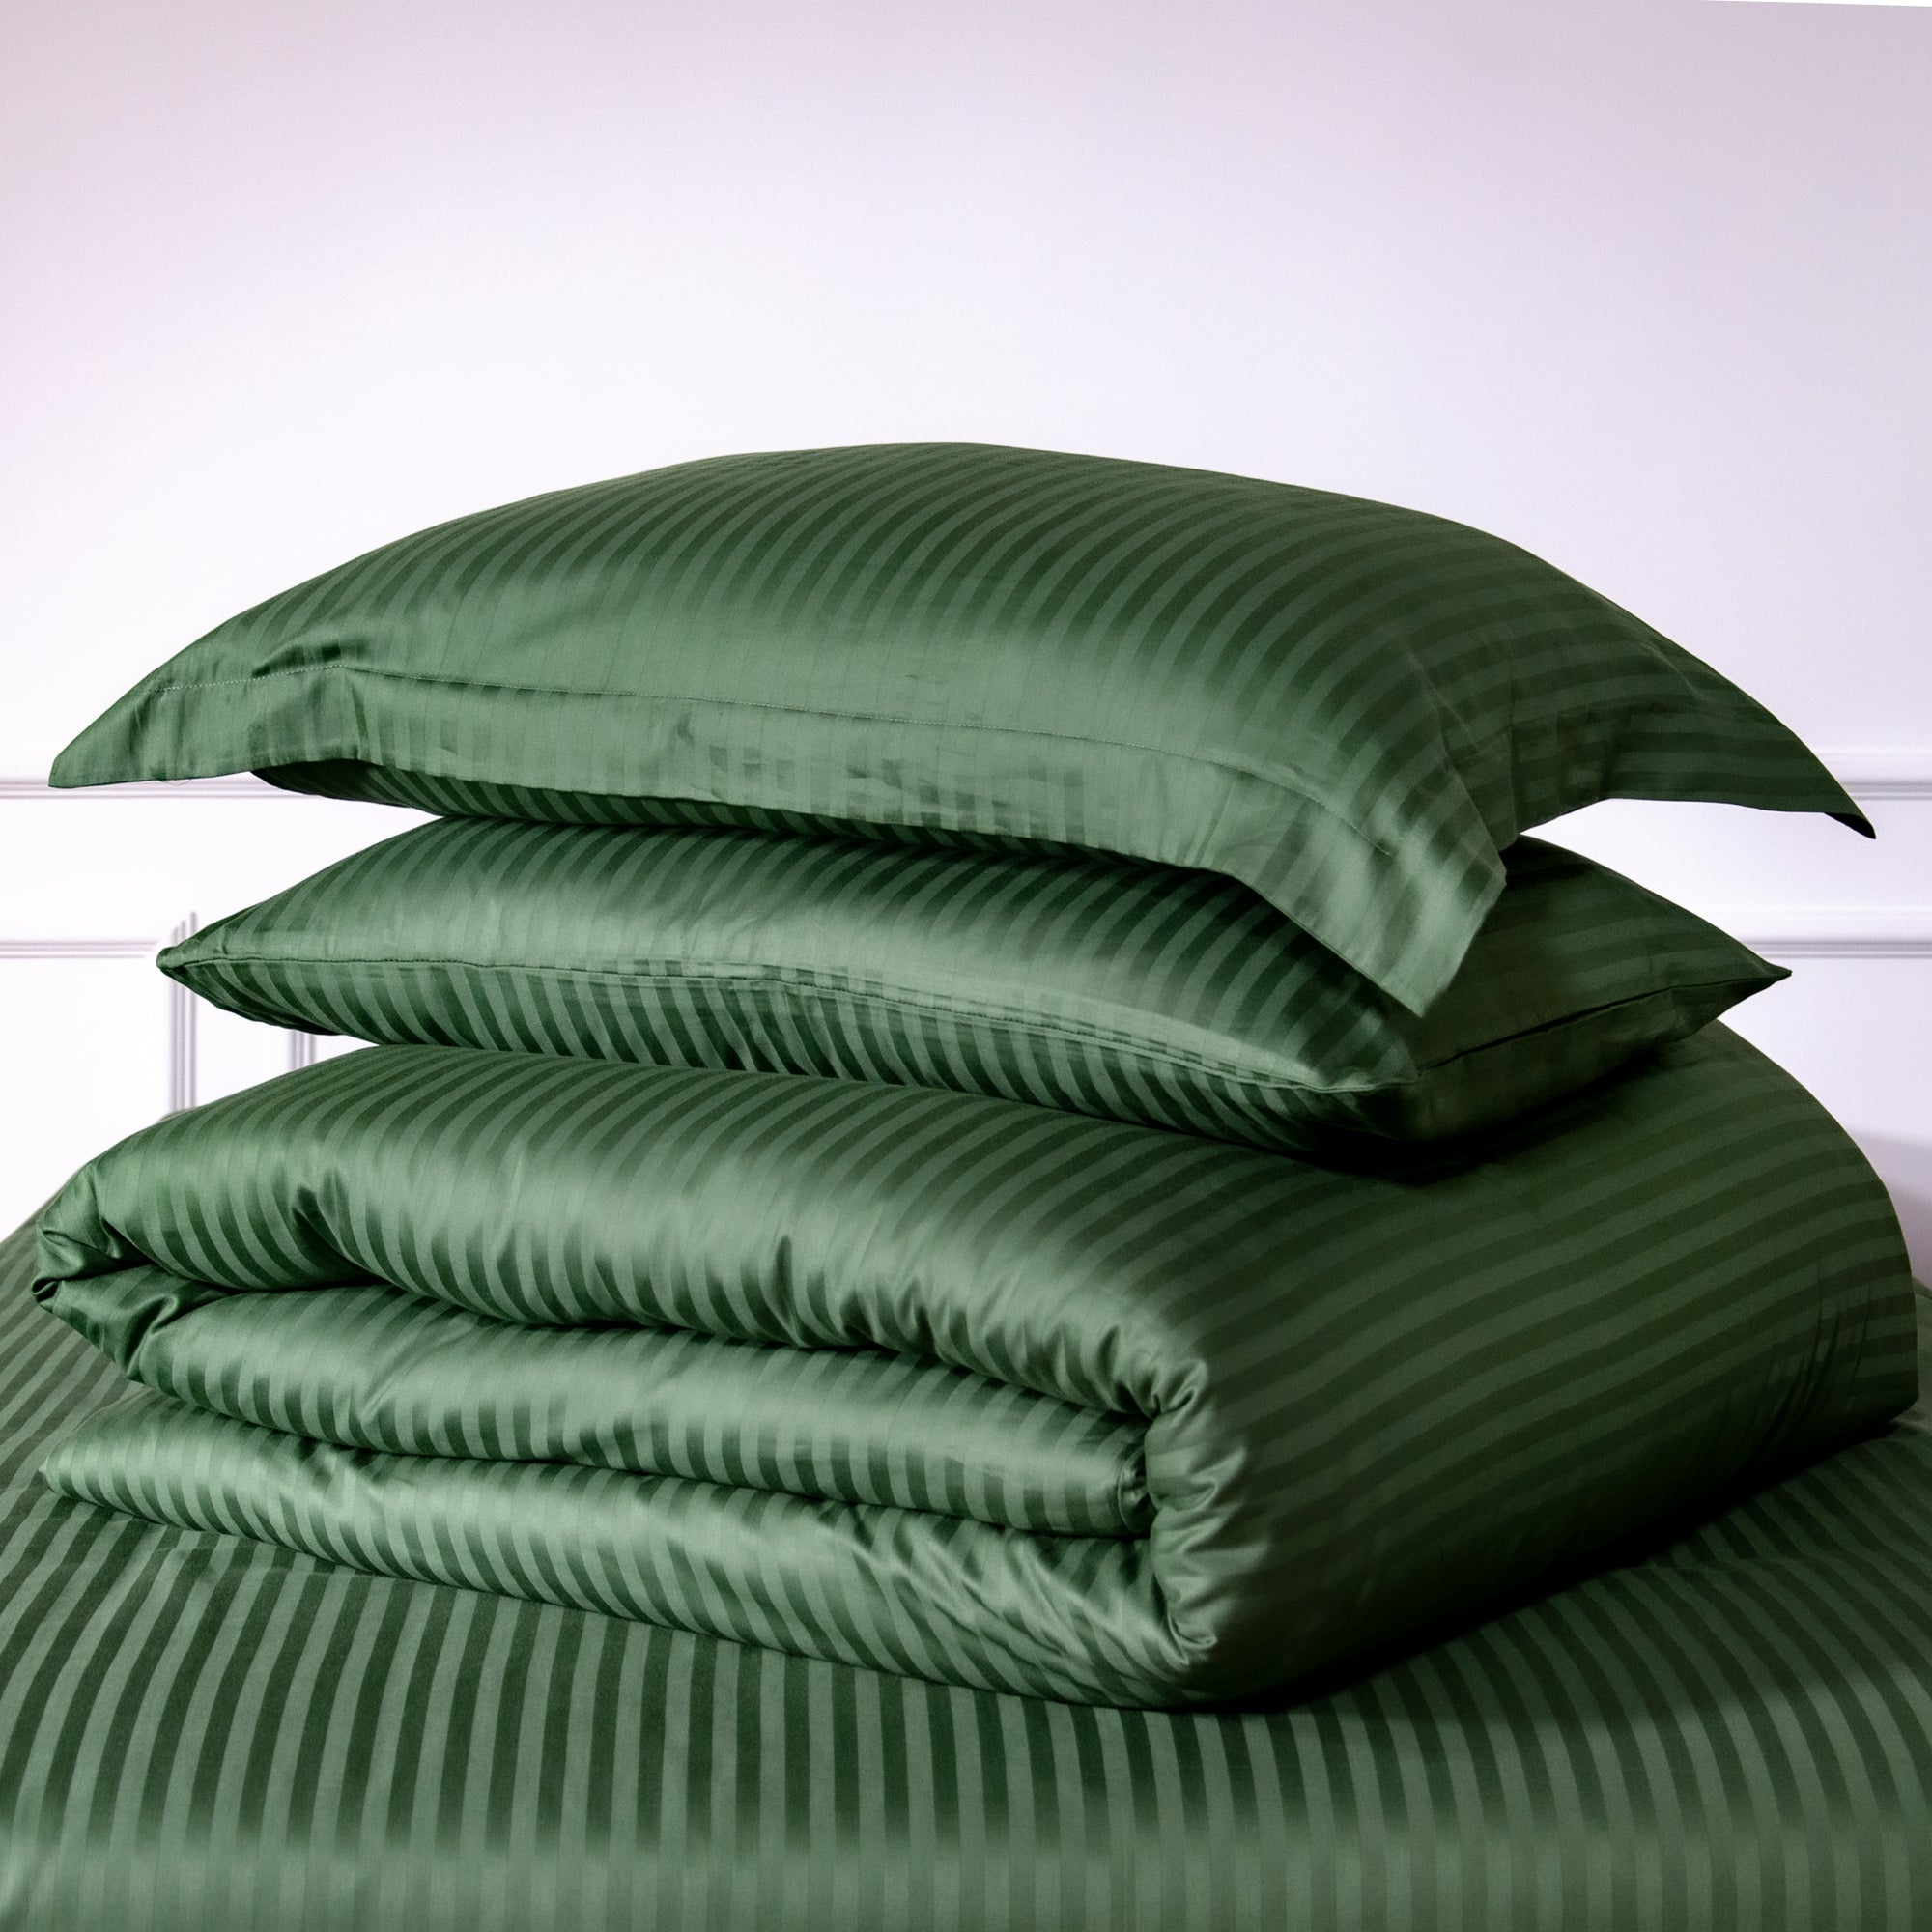 Einteiliges, grün gestreiftes Bettlaken aus 100 % Baumwollsatin